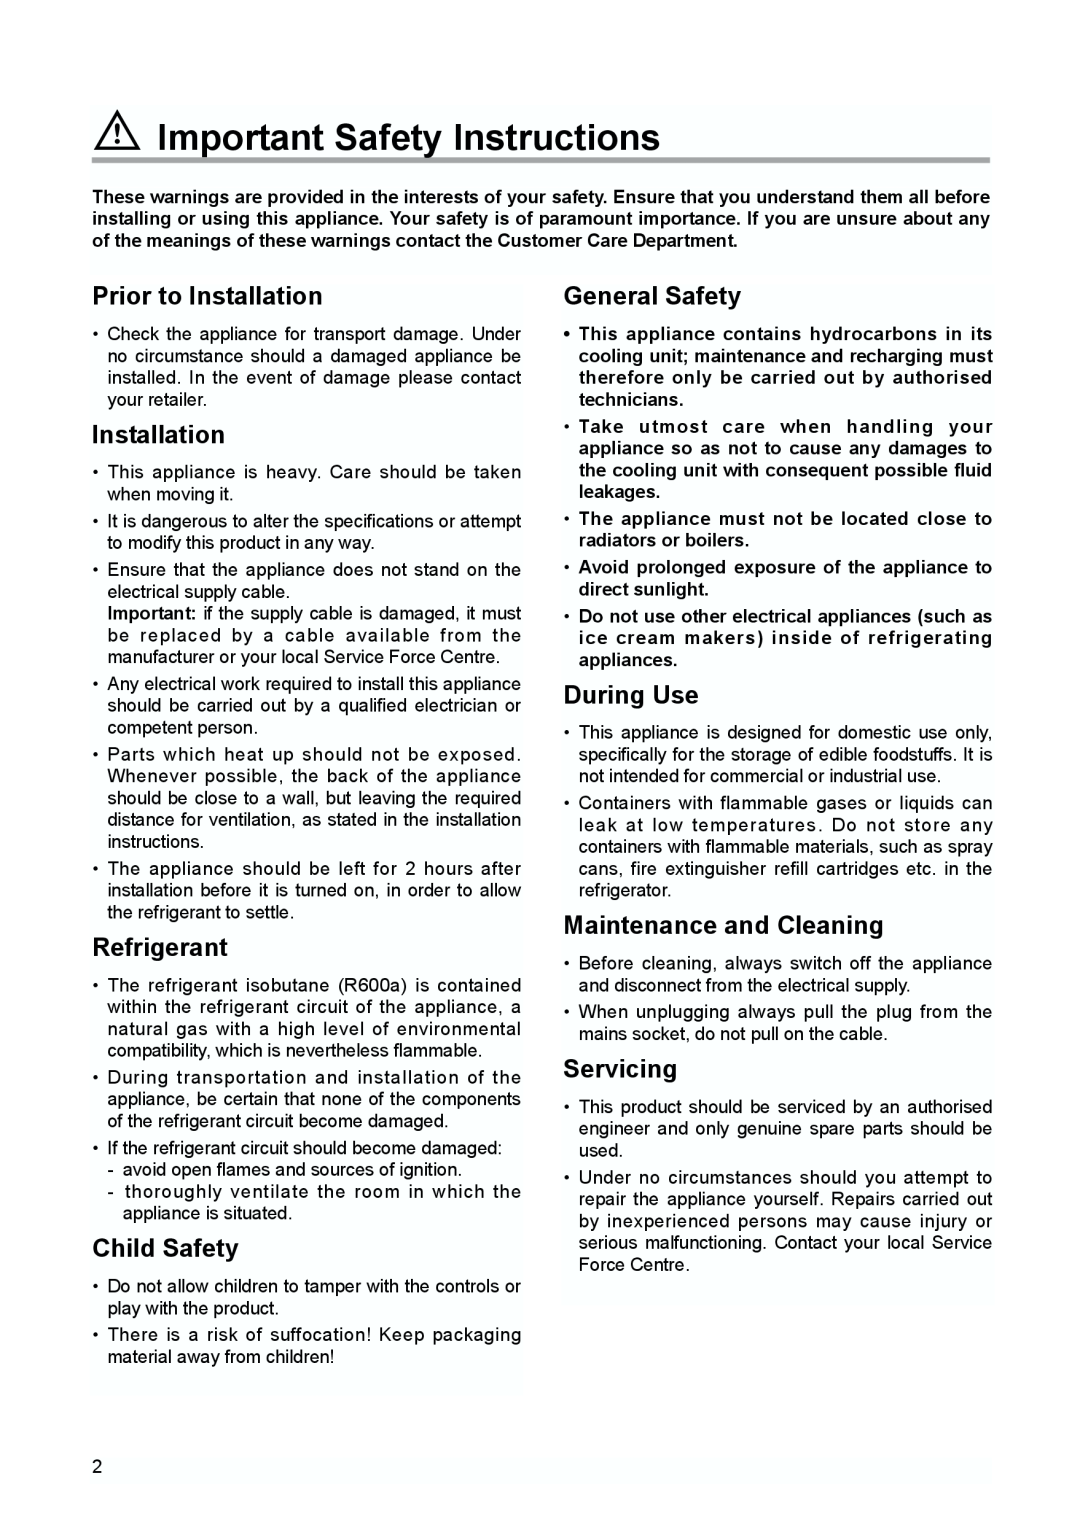 Zanussi ZBA 6160, ZBA 6230 Important Safety Instructions, Prior to Installation, Refrigerant, Child Safety, General Safety 